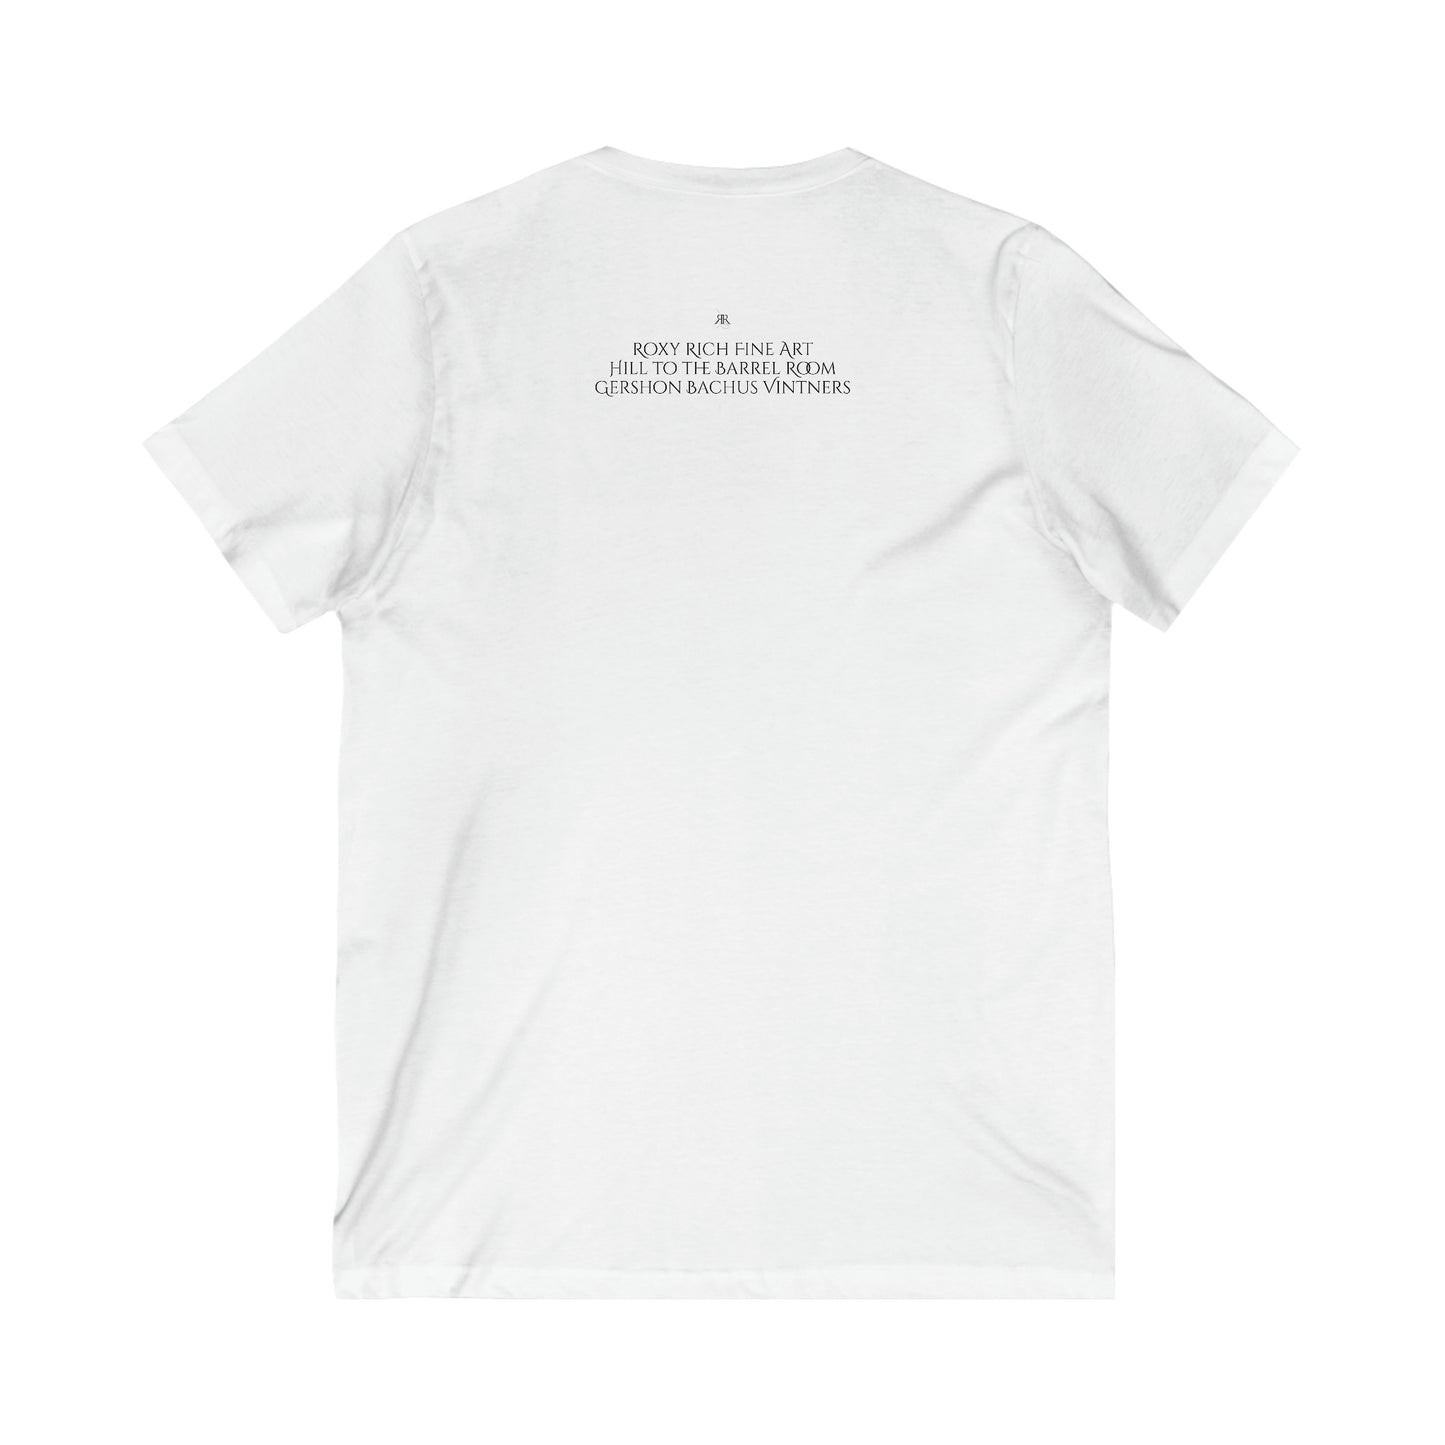 Hill to the Barrel Room en Gershon Bachus Vintners-Unisex Jersey camiseta de manga corta con cuello en V